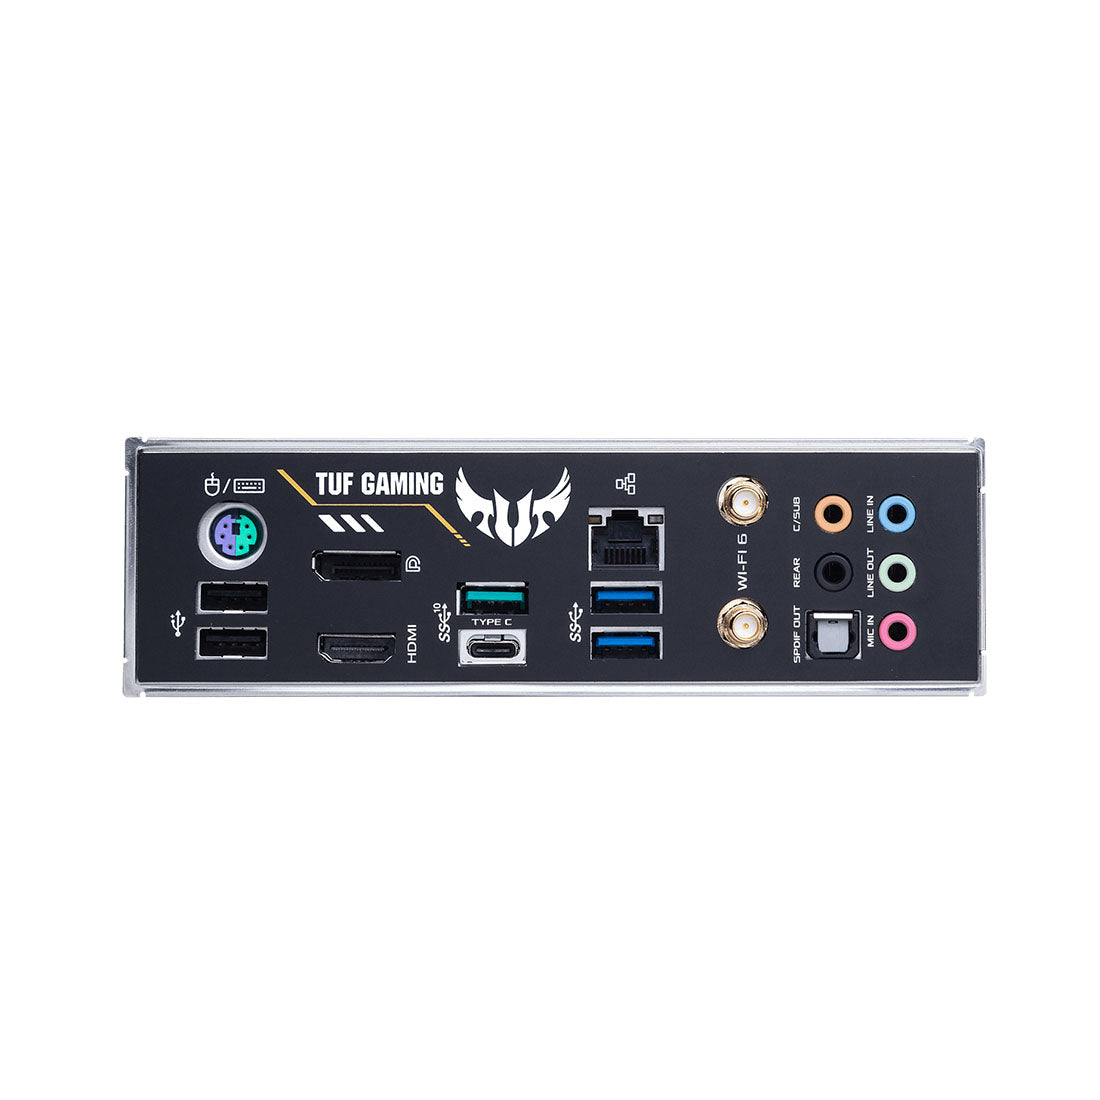 Asus TUF गेमिंग H470 PRO WiFi LGA 1200 ATX मदरबोर्ड थंडरबोल्ट 3 सपोर्ट के साथ